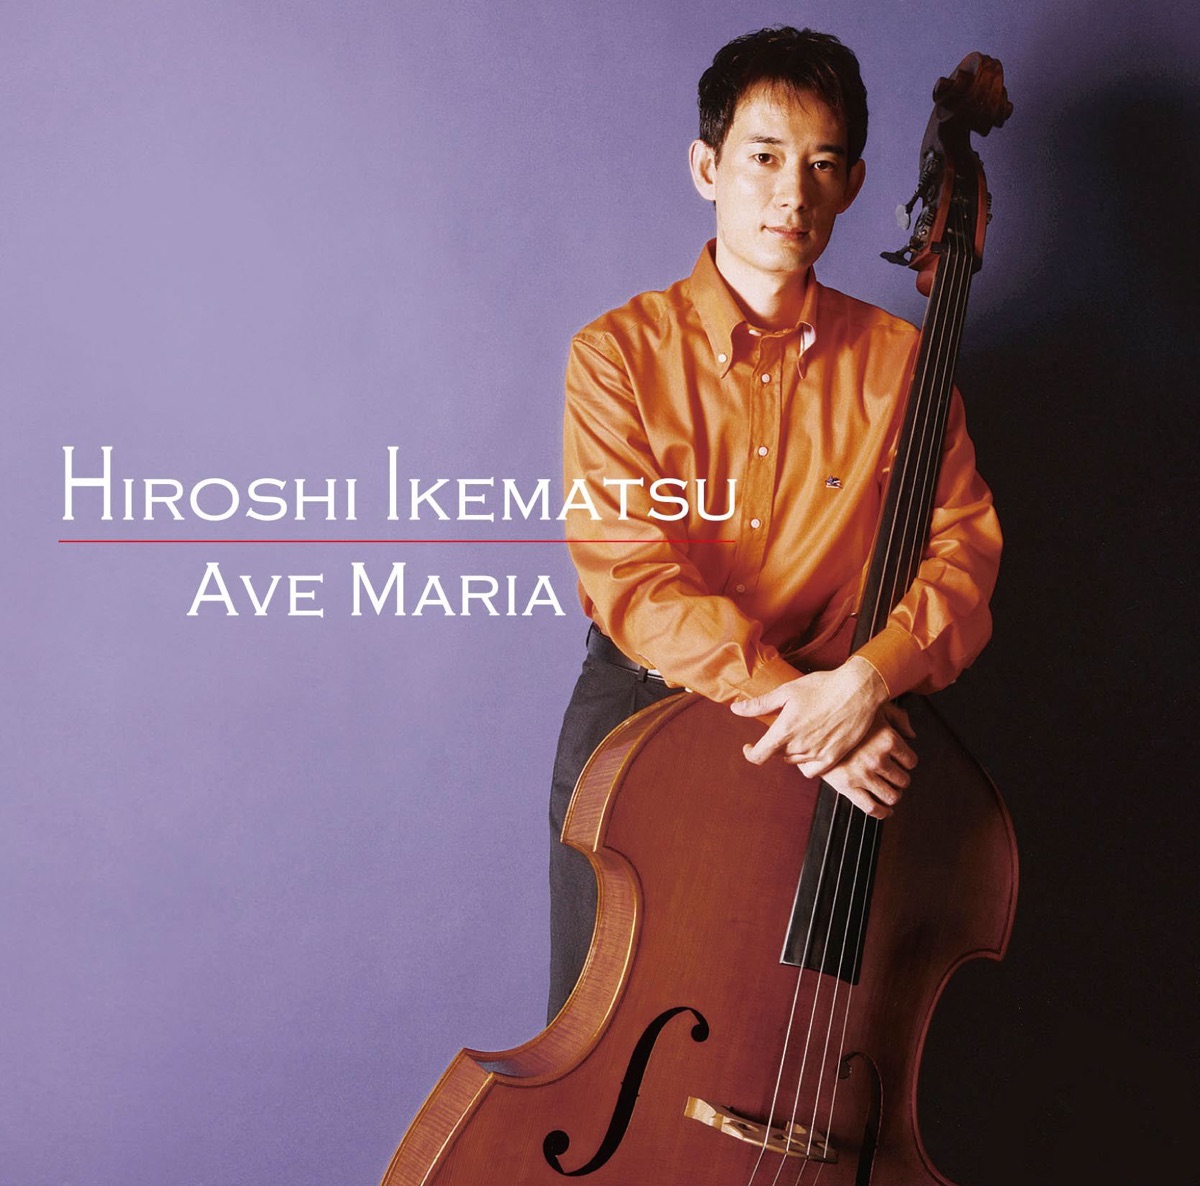 5つのアヴェマリア” álbum de 池松 宏 en Apple Music